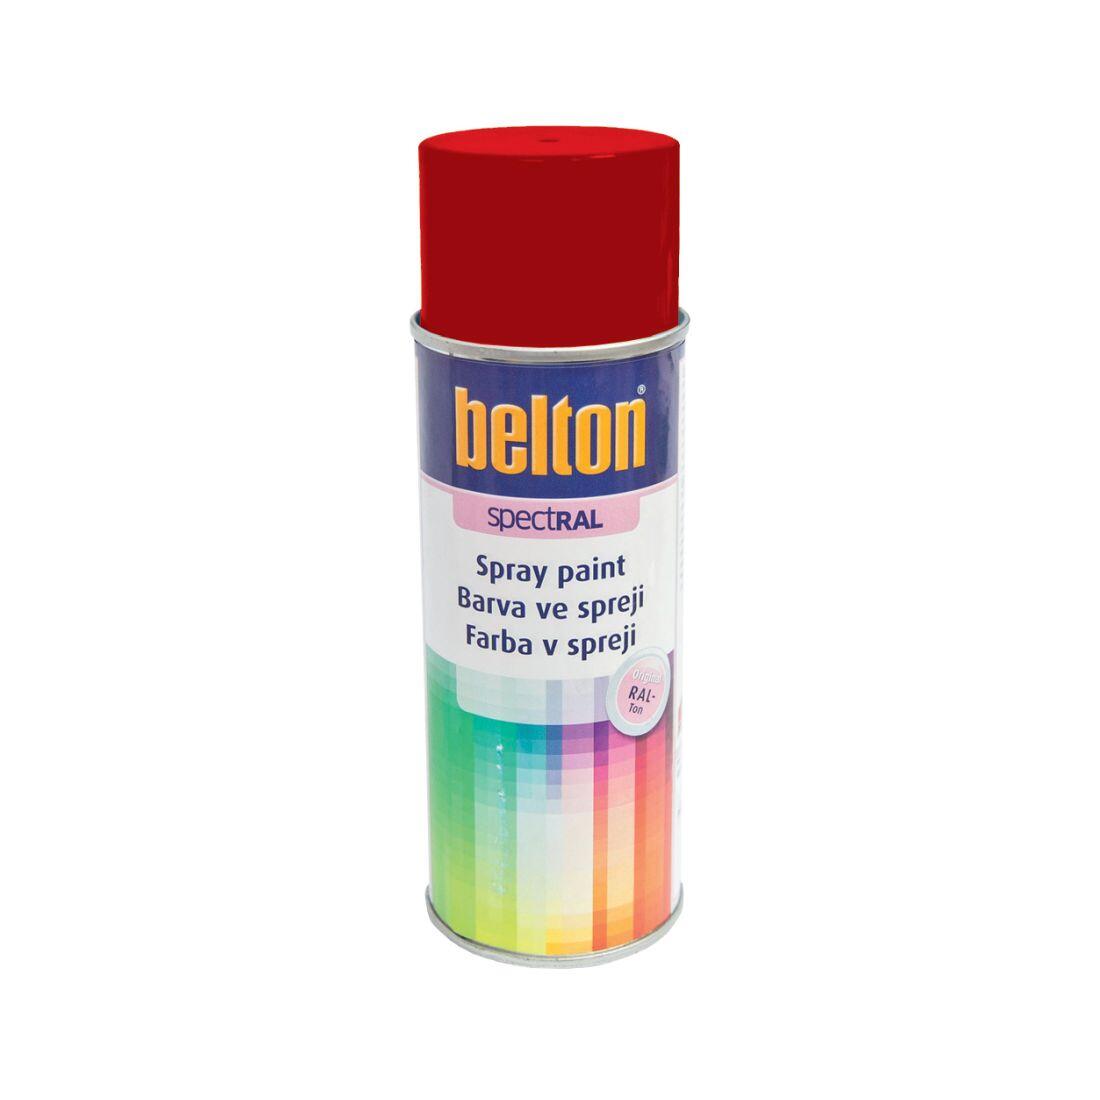 barva ve spreji BELTON RAL 3000, 400ml ČRV ohnivě lesklá 0.31 Kg MAXMIX Sklad14 825129 12